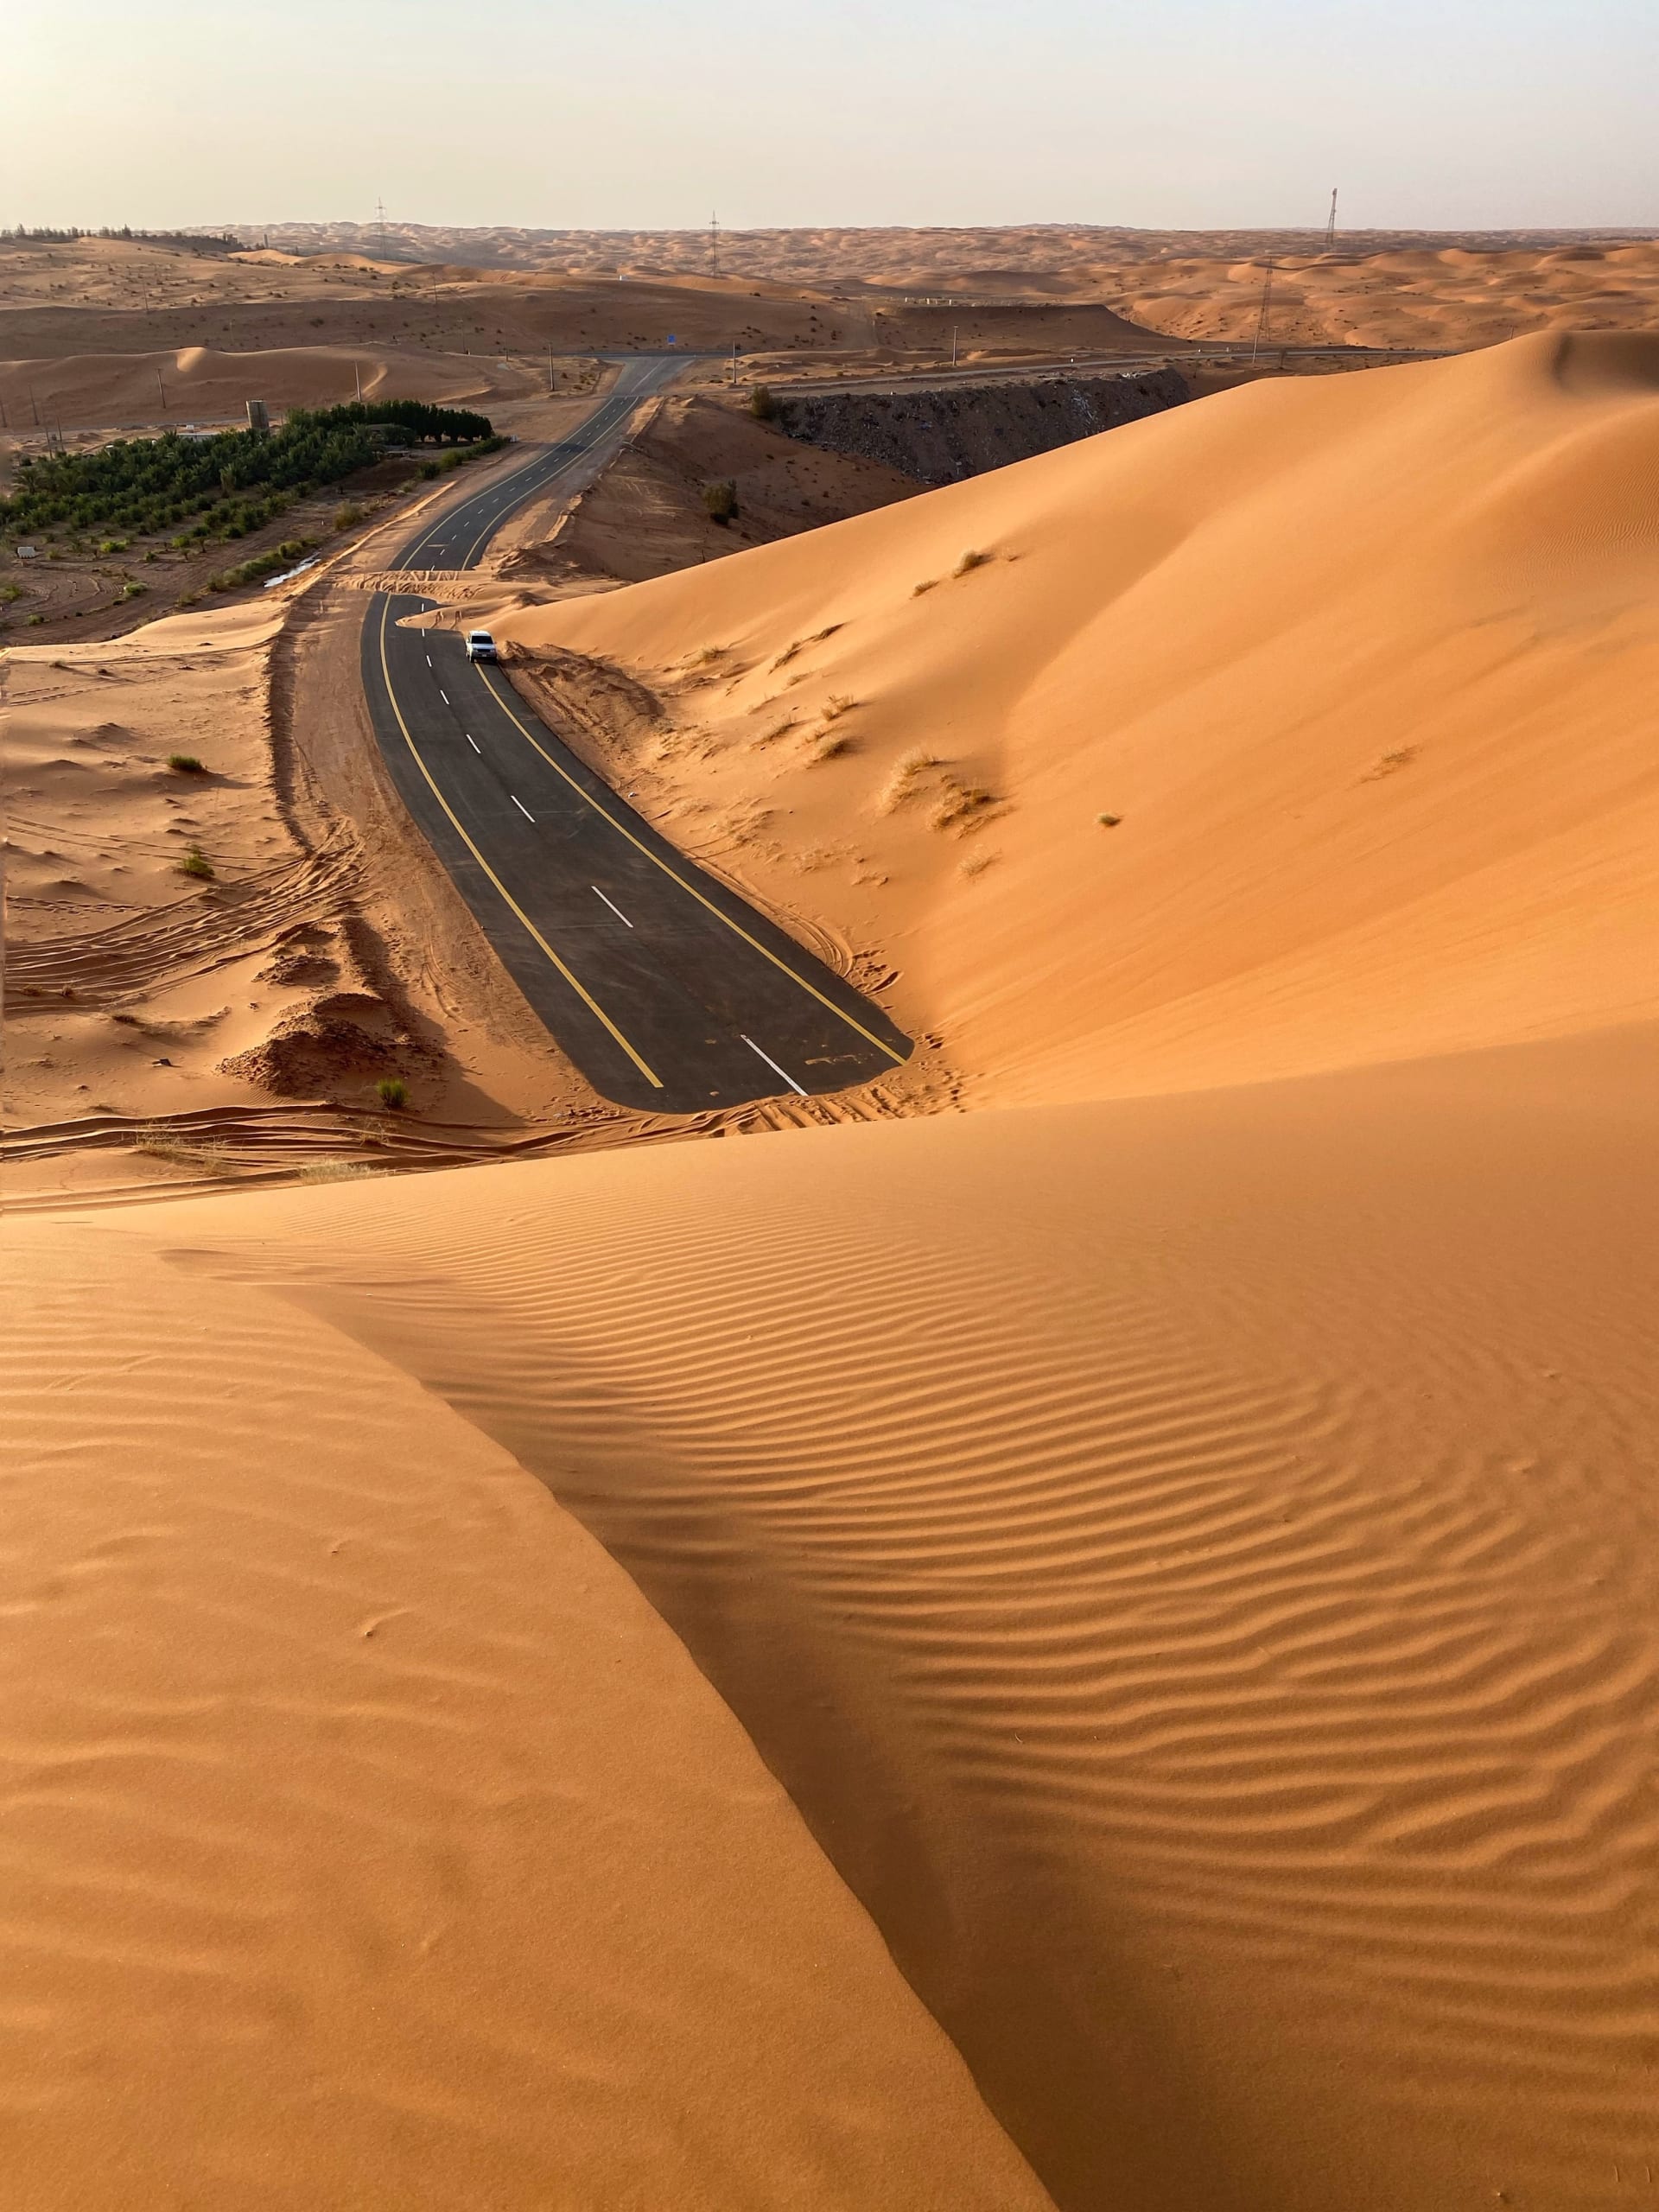 En Arabie Saoudite, un photographe documente une charmante promenade au bout d'une route recouverte de sable doré